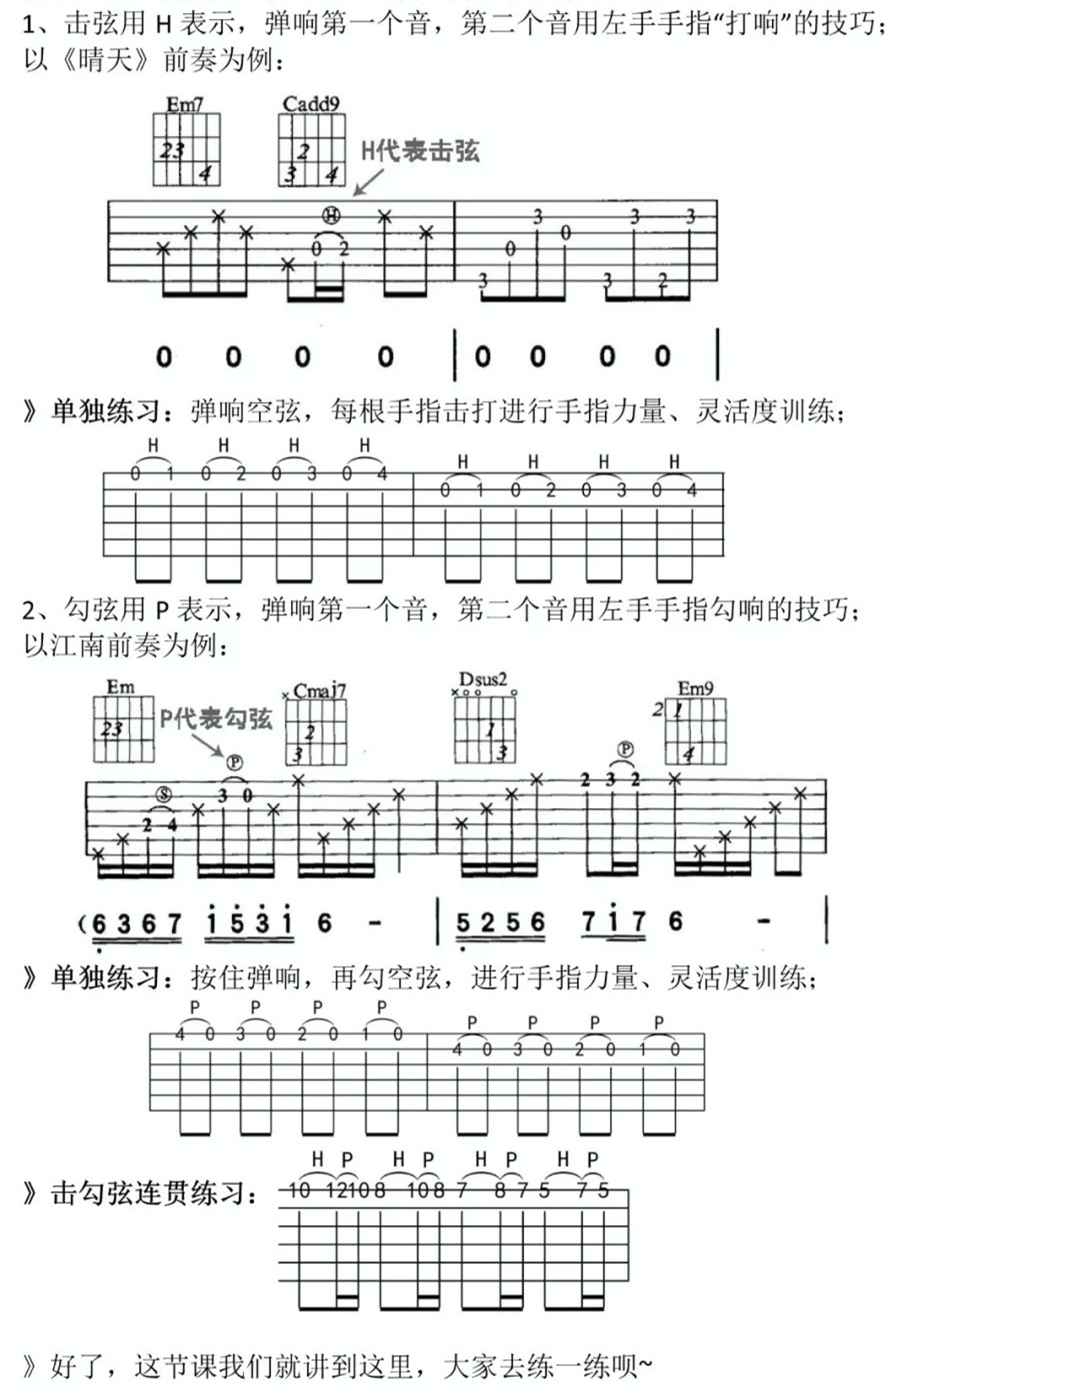 适合吉他初学者弹的歌曲《稻香》G大调/四四拍/分解和弦-吉他曲谱 - 乐器学习网